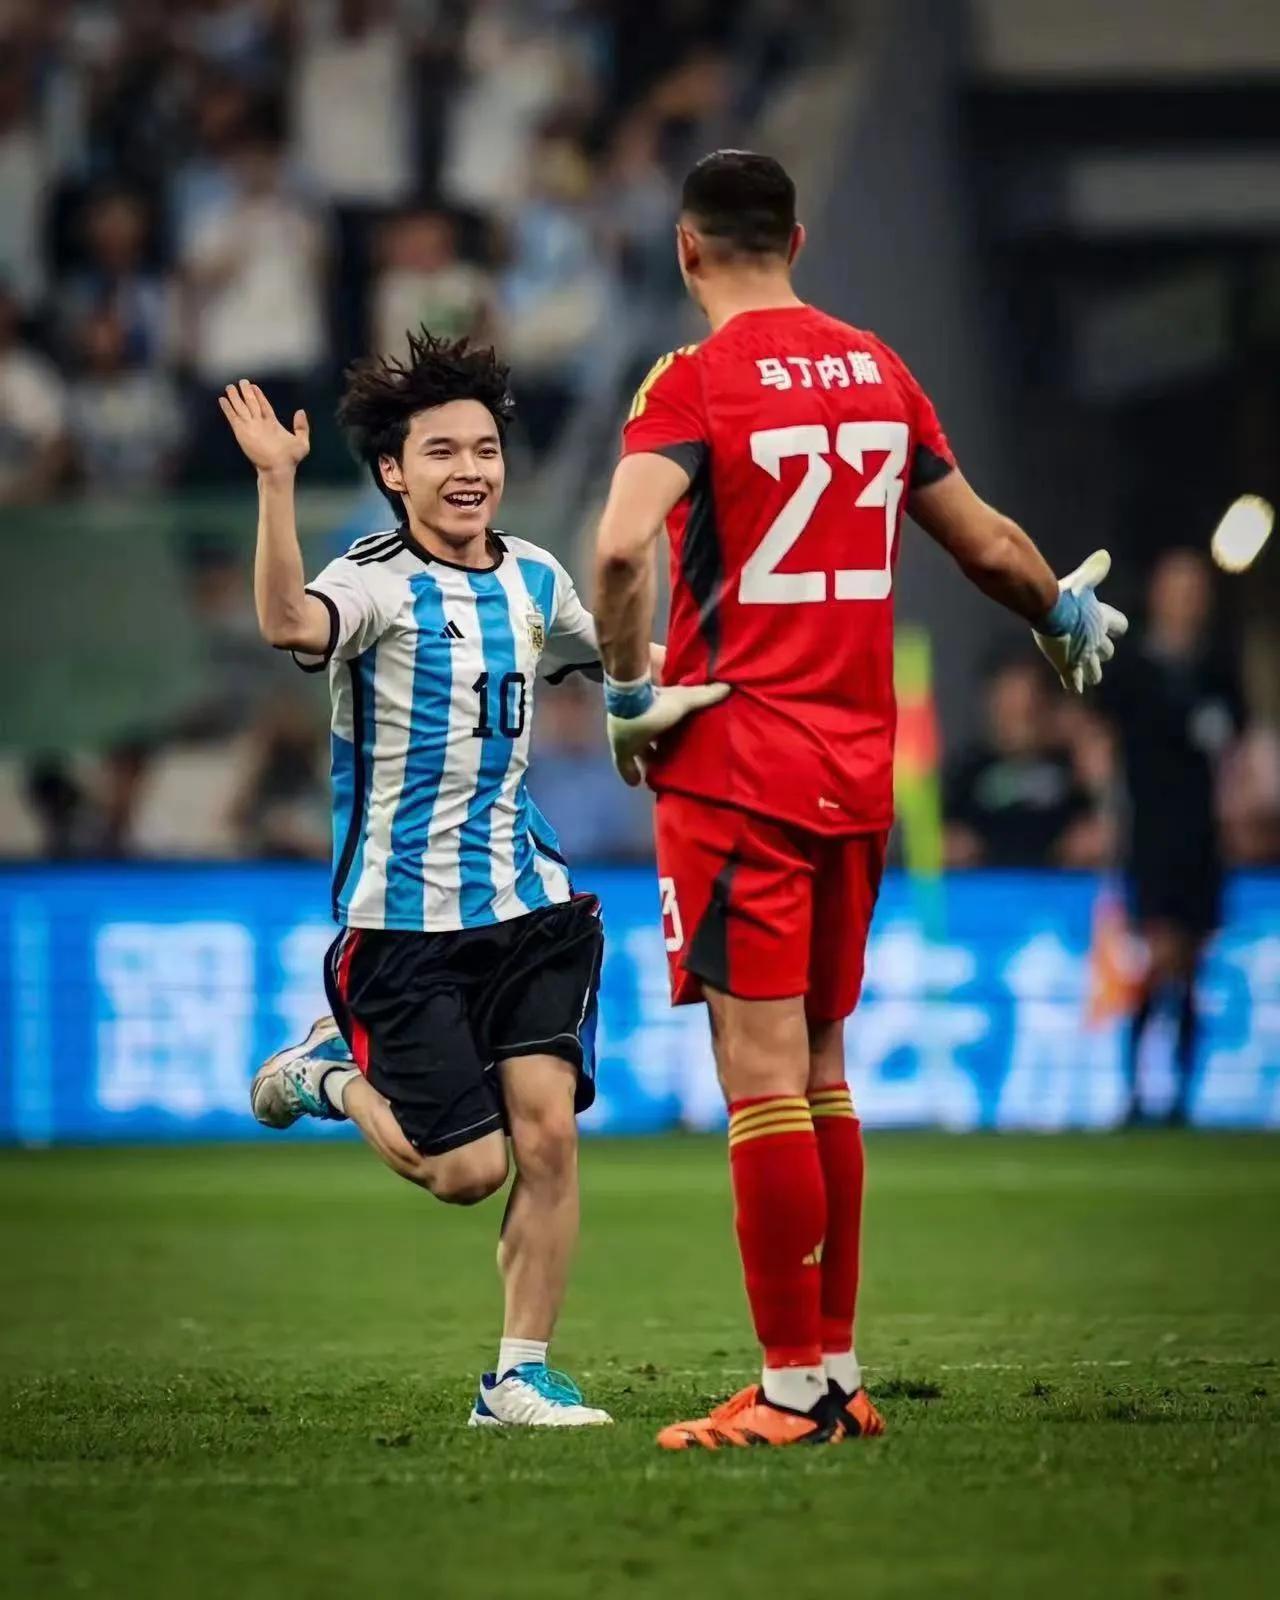 中国这位阿根廷队小伙子球迷干得非常漂亮，在闯入阿根廷比赛现场时激情四射，满状态全